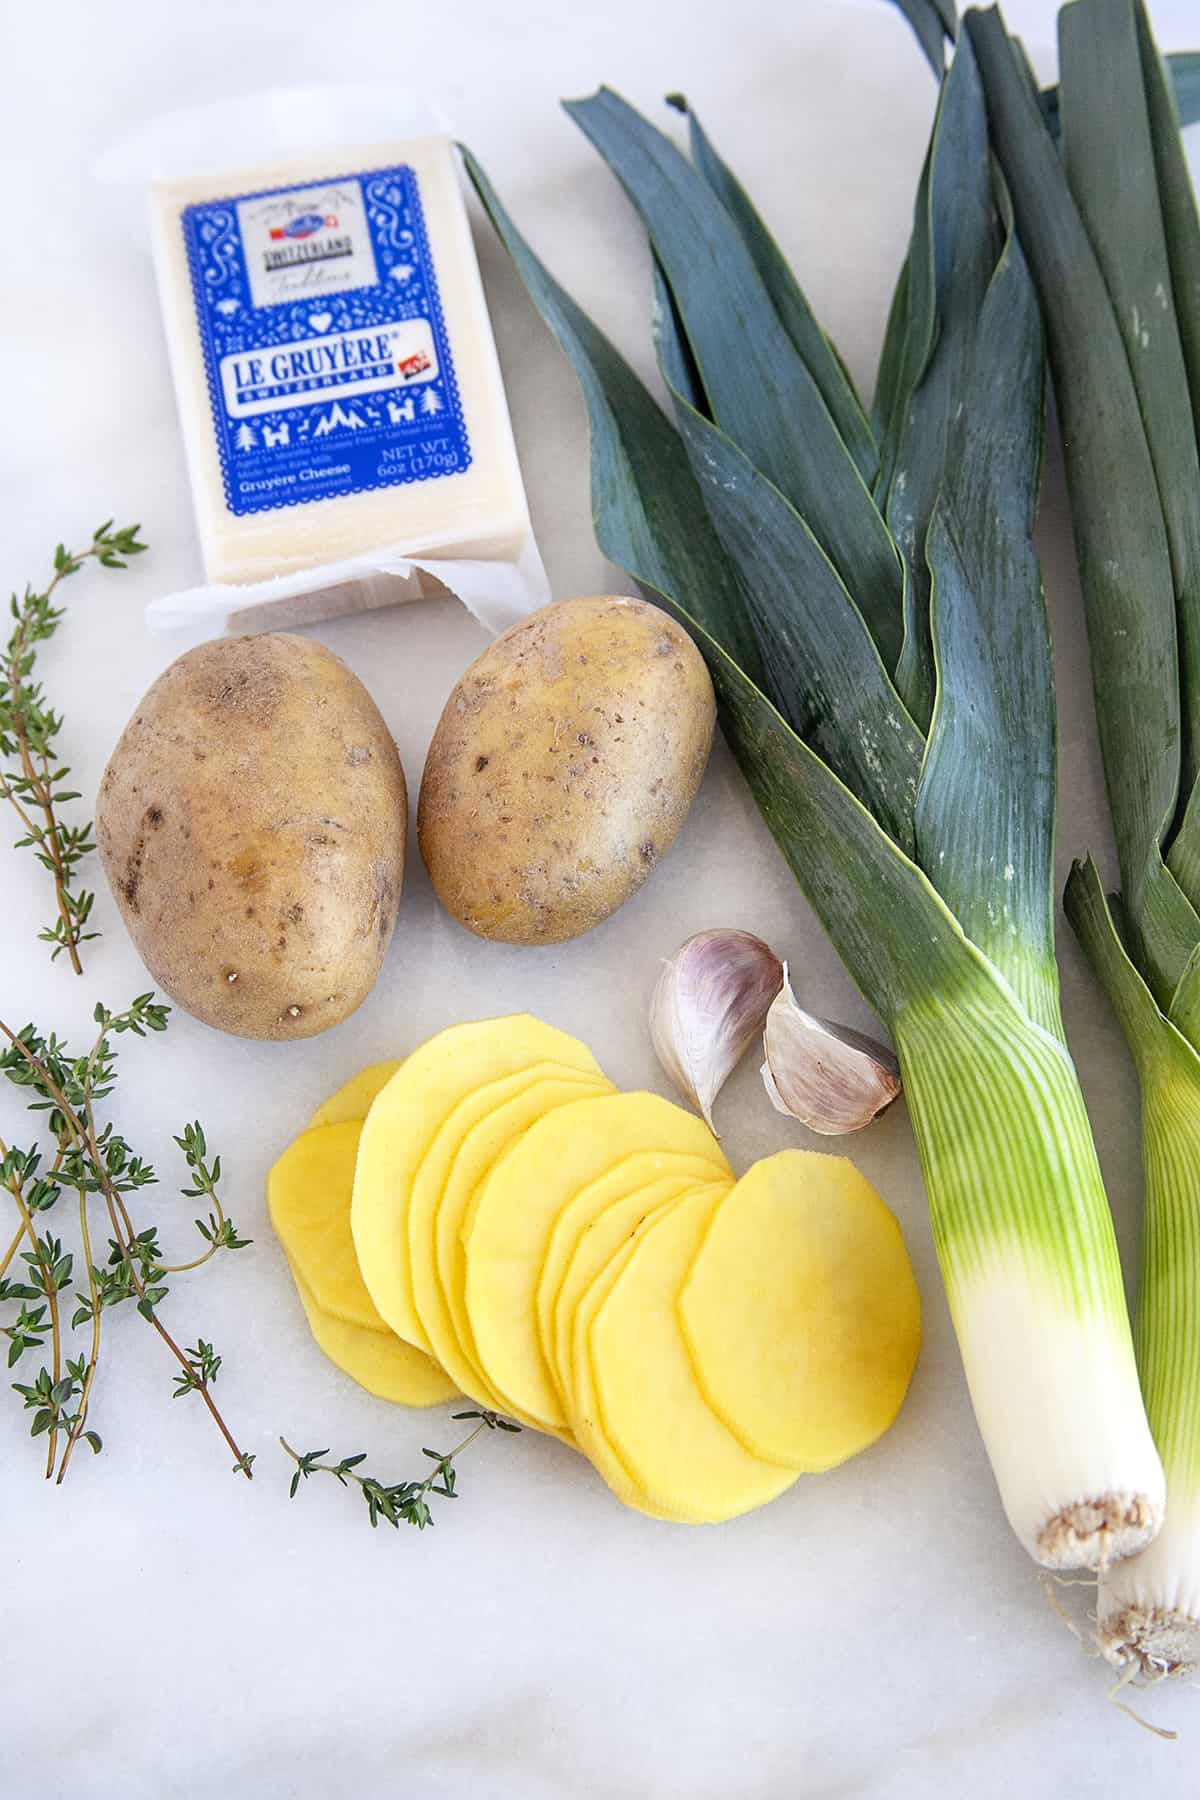 Ingredients for Potato Leek Gratin. 